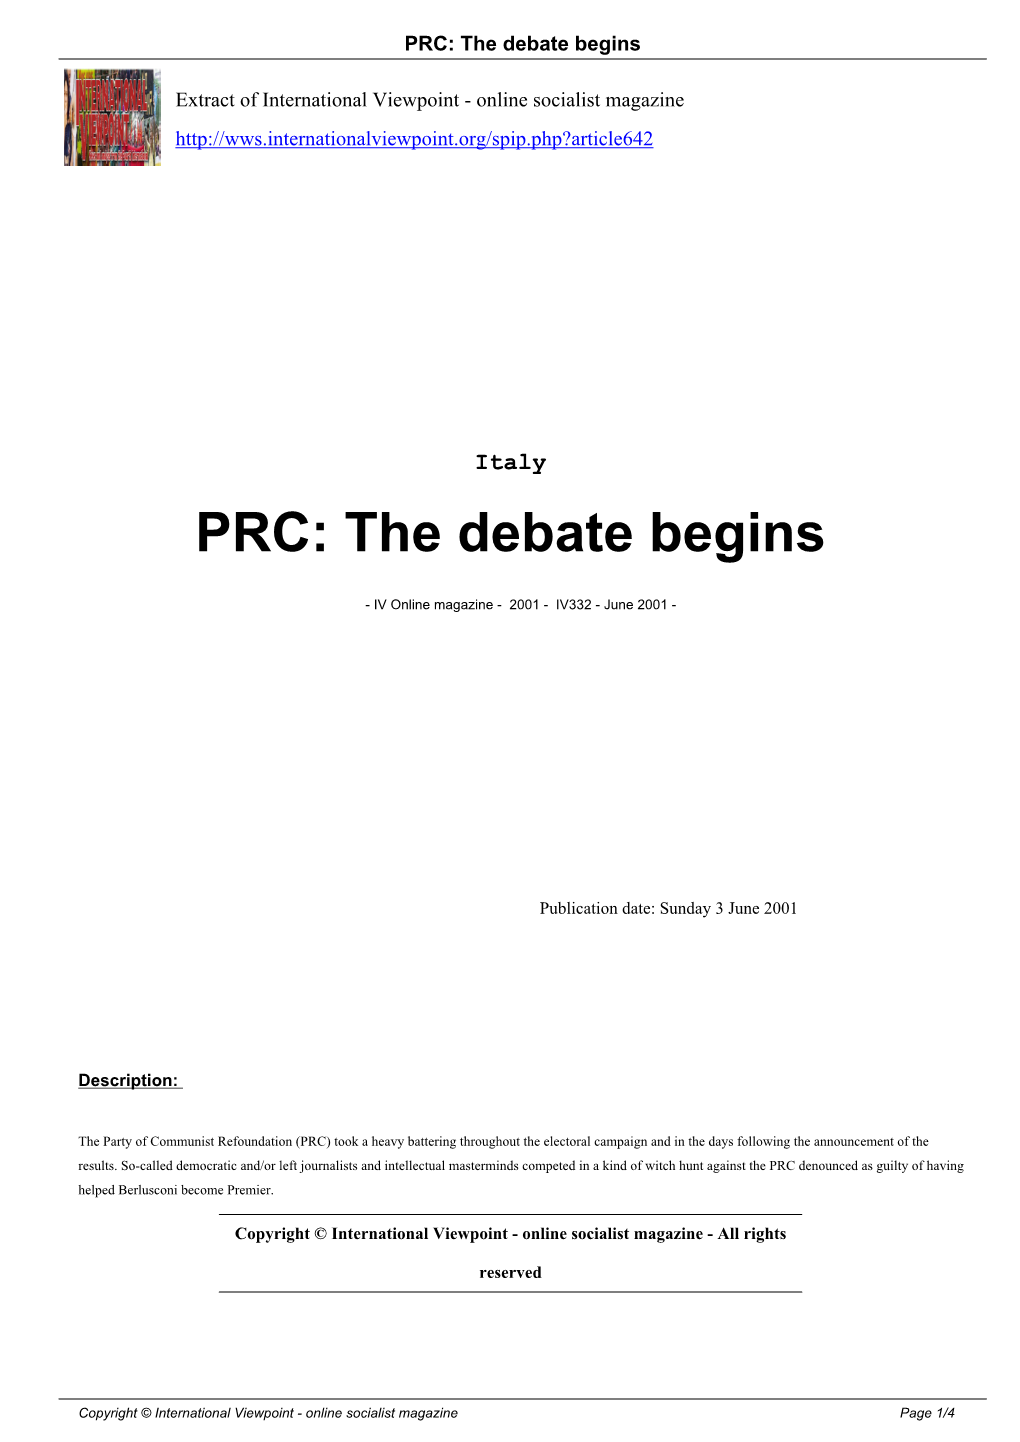 PRC: the Debate Begins